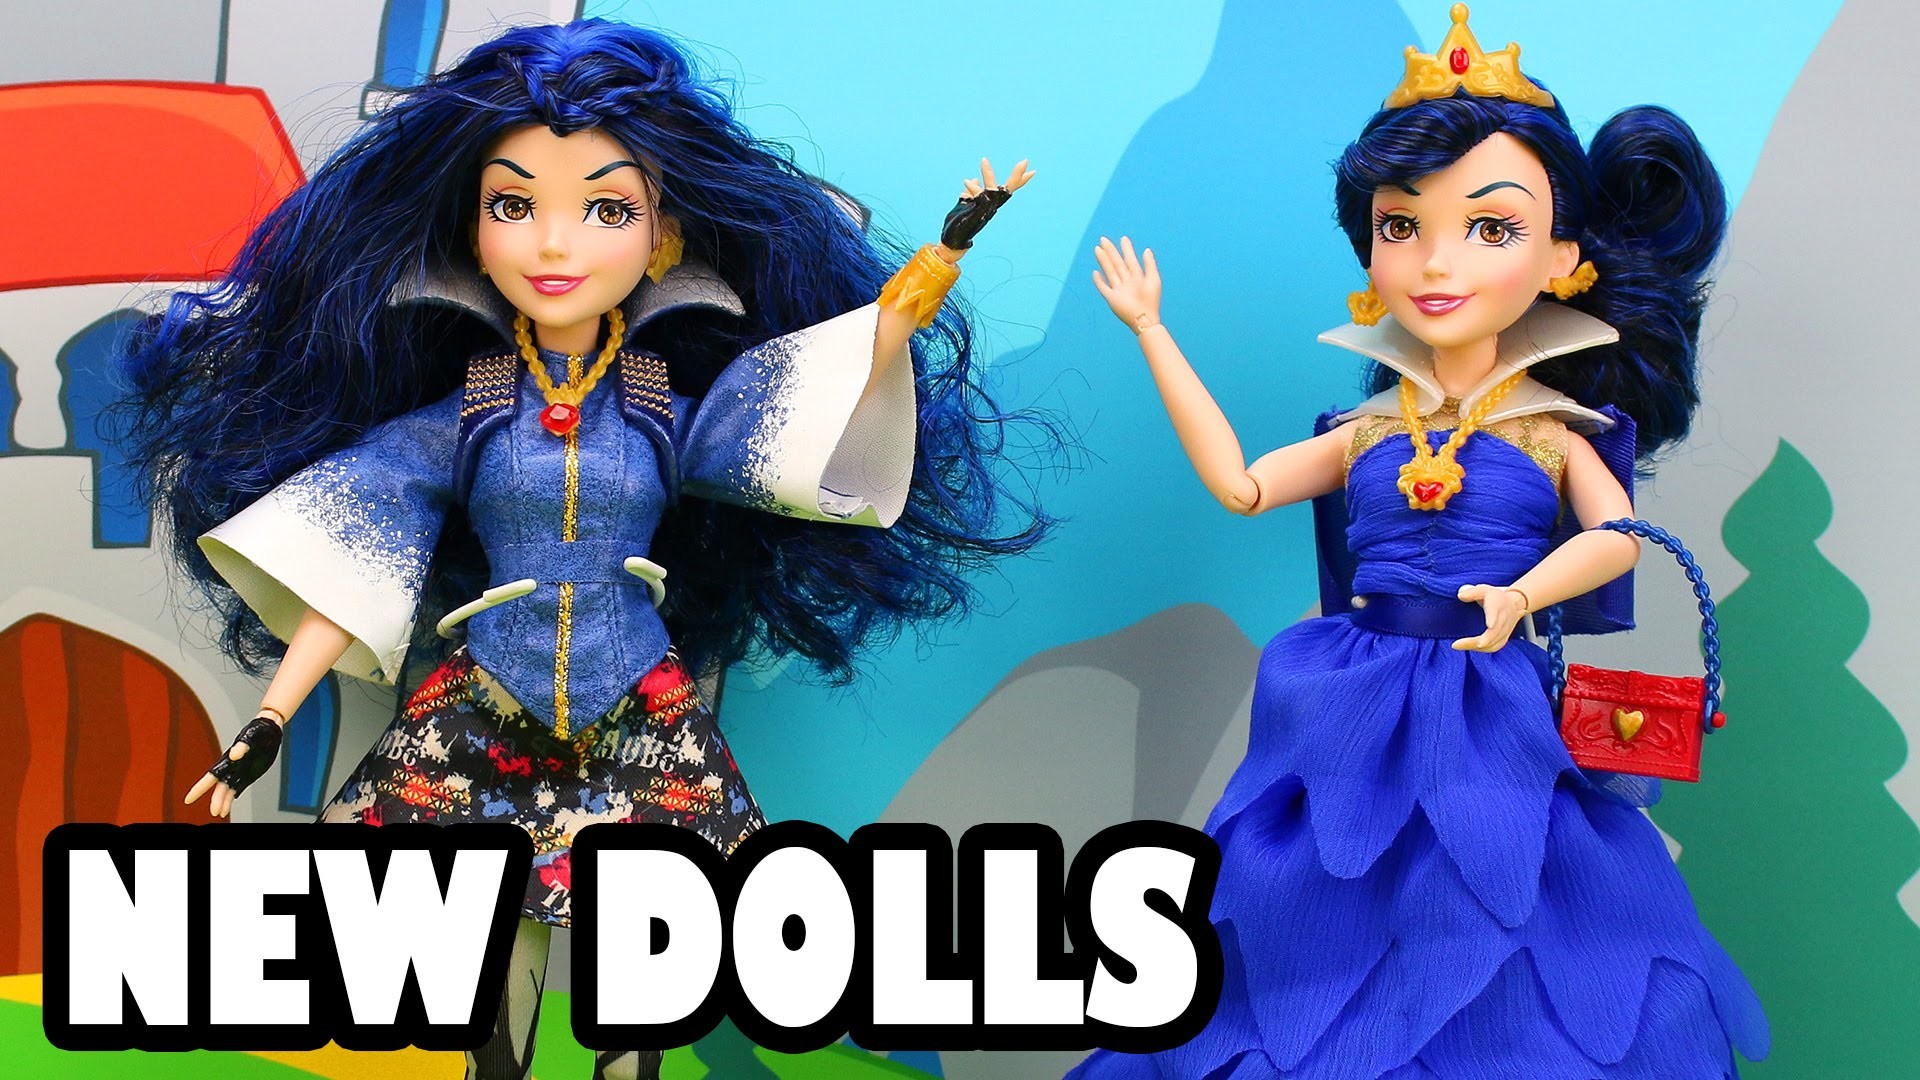 1920x1080 New Disney Descendants Evie Dolls Review. Rotten Queen's Daughter.  DisneyToysFan. - YouTube